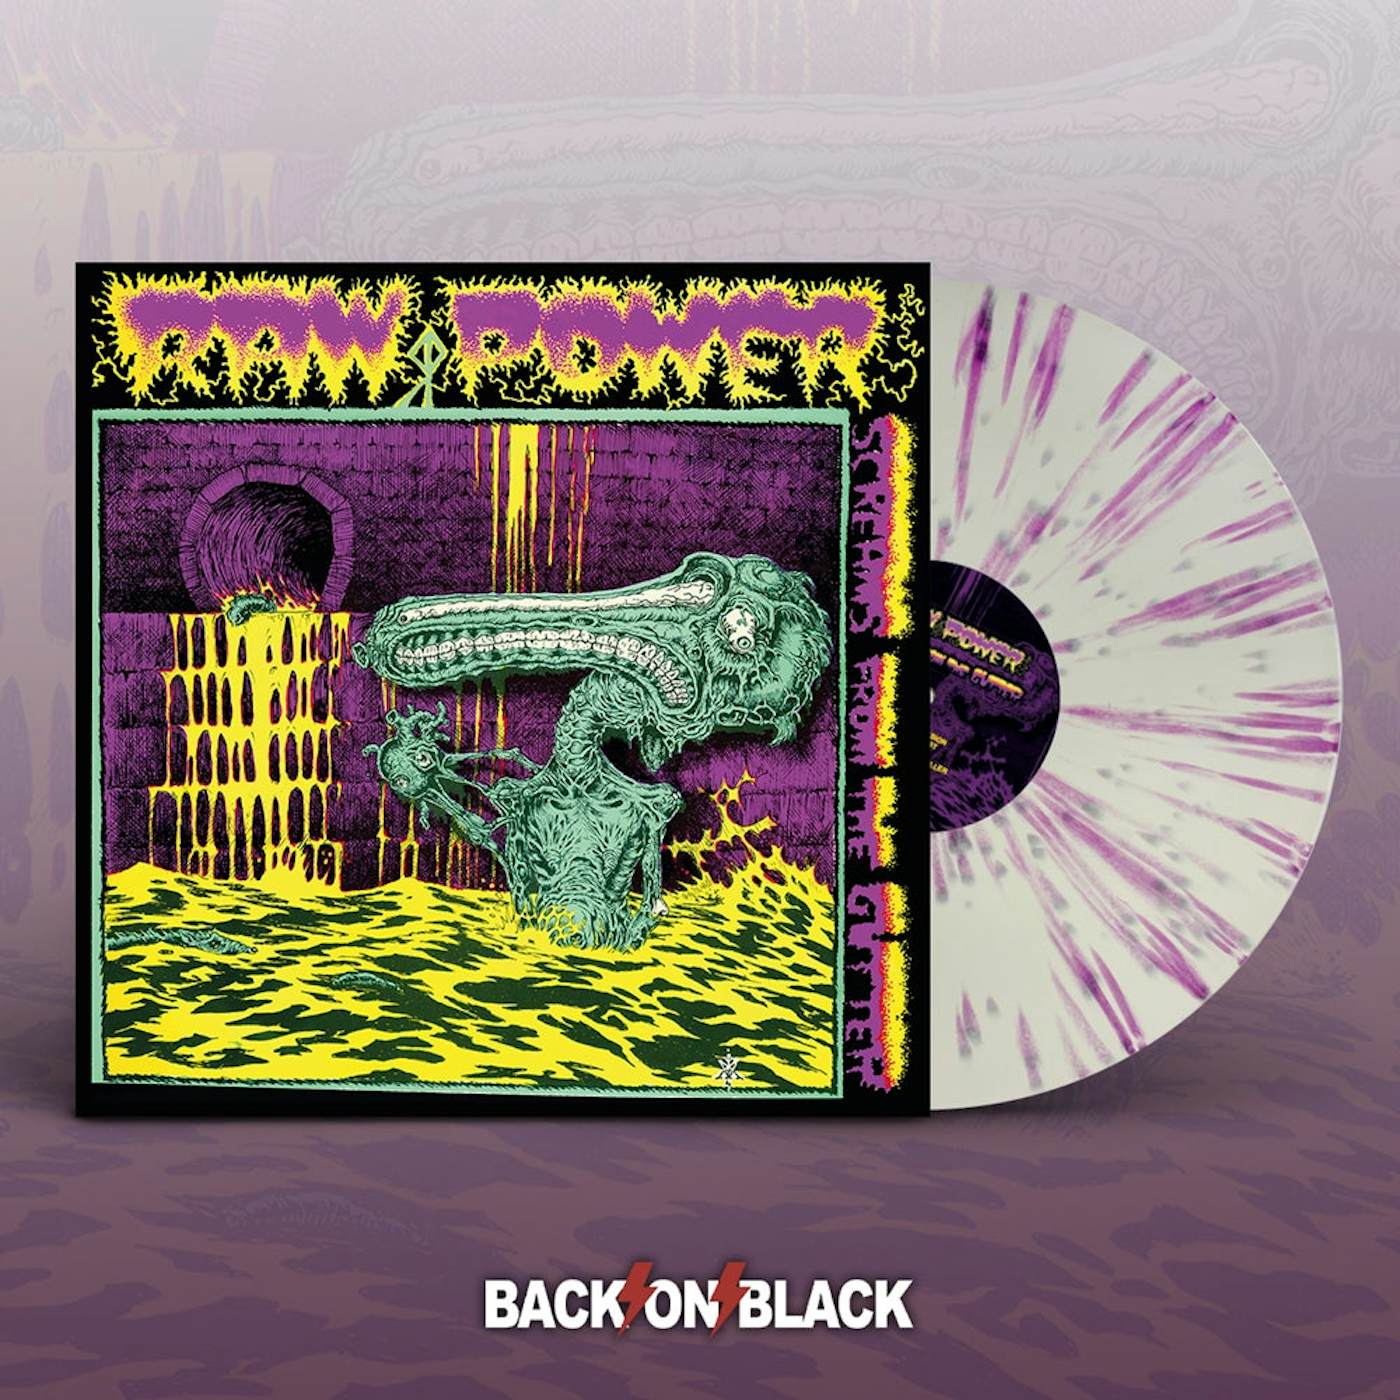  Raw Power LP - Screams From The Gutter (White W/ Purple Splatter Vinyl)